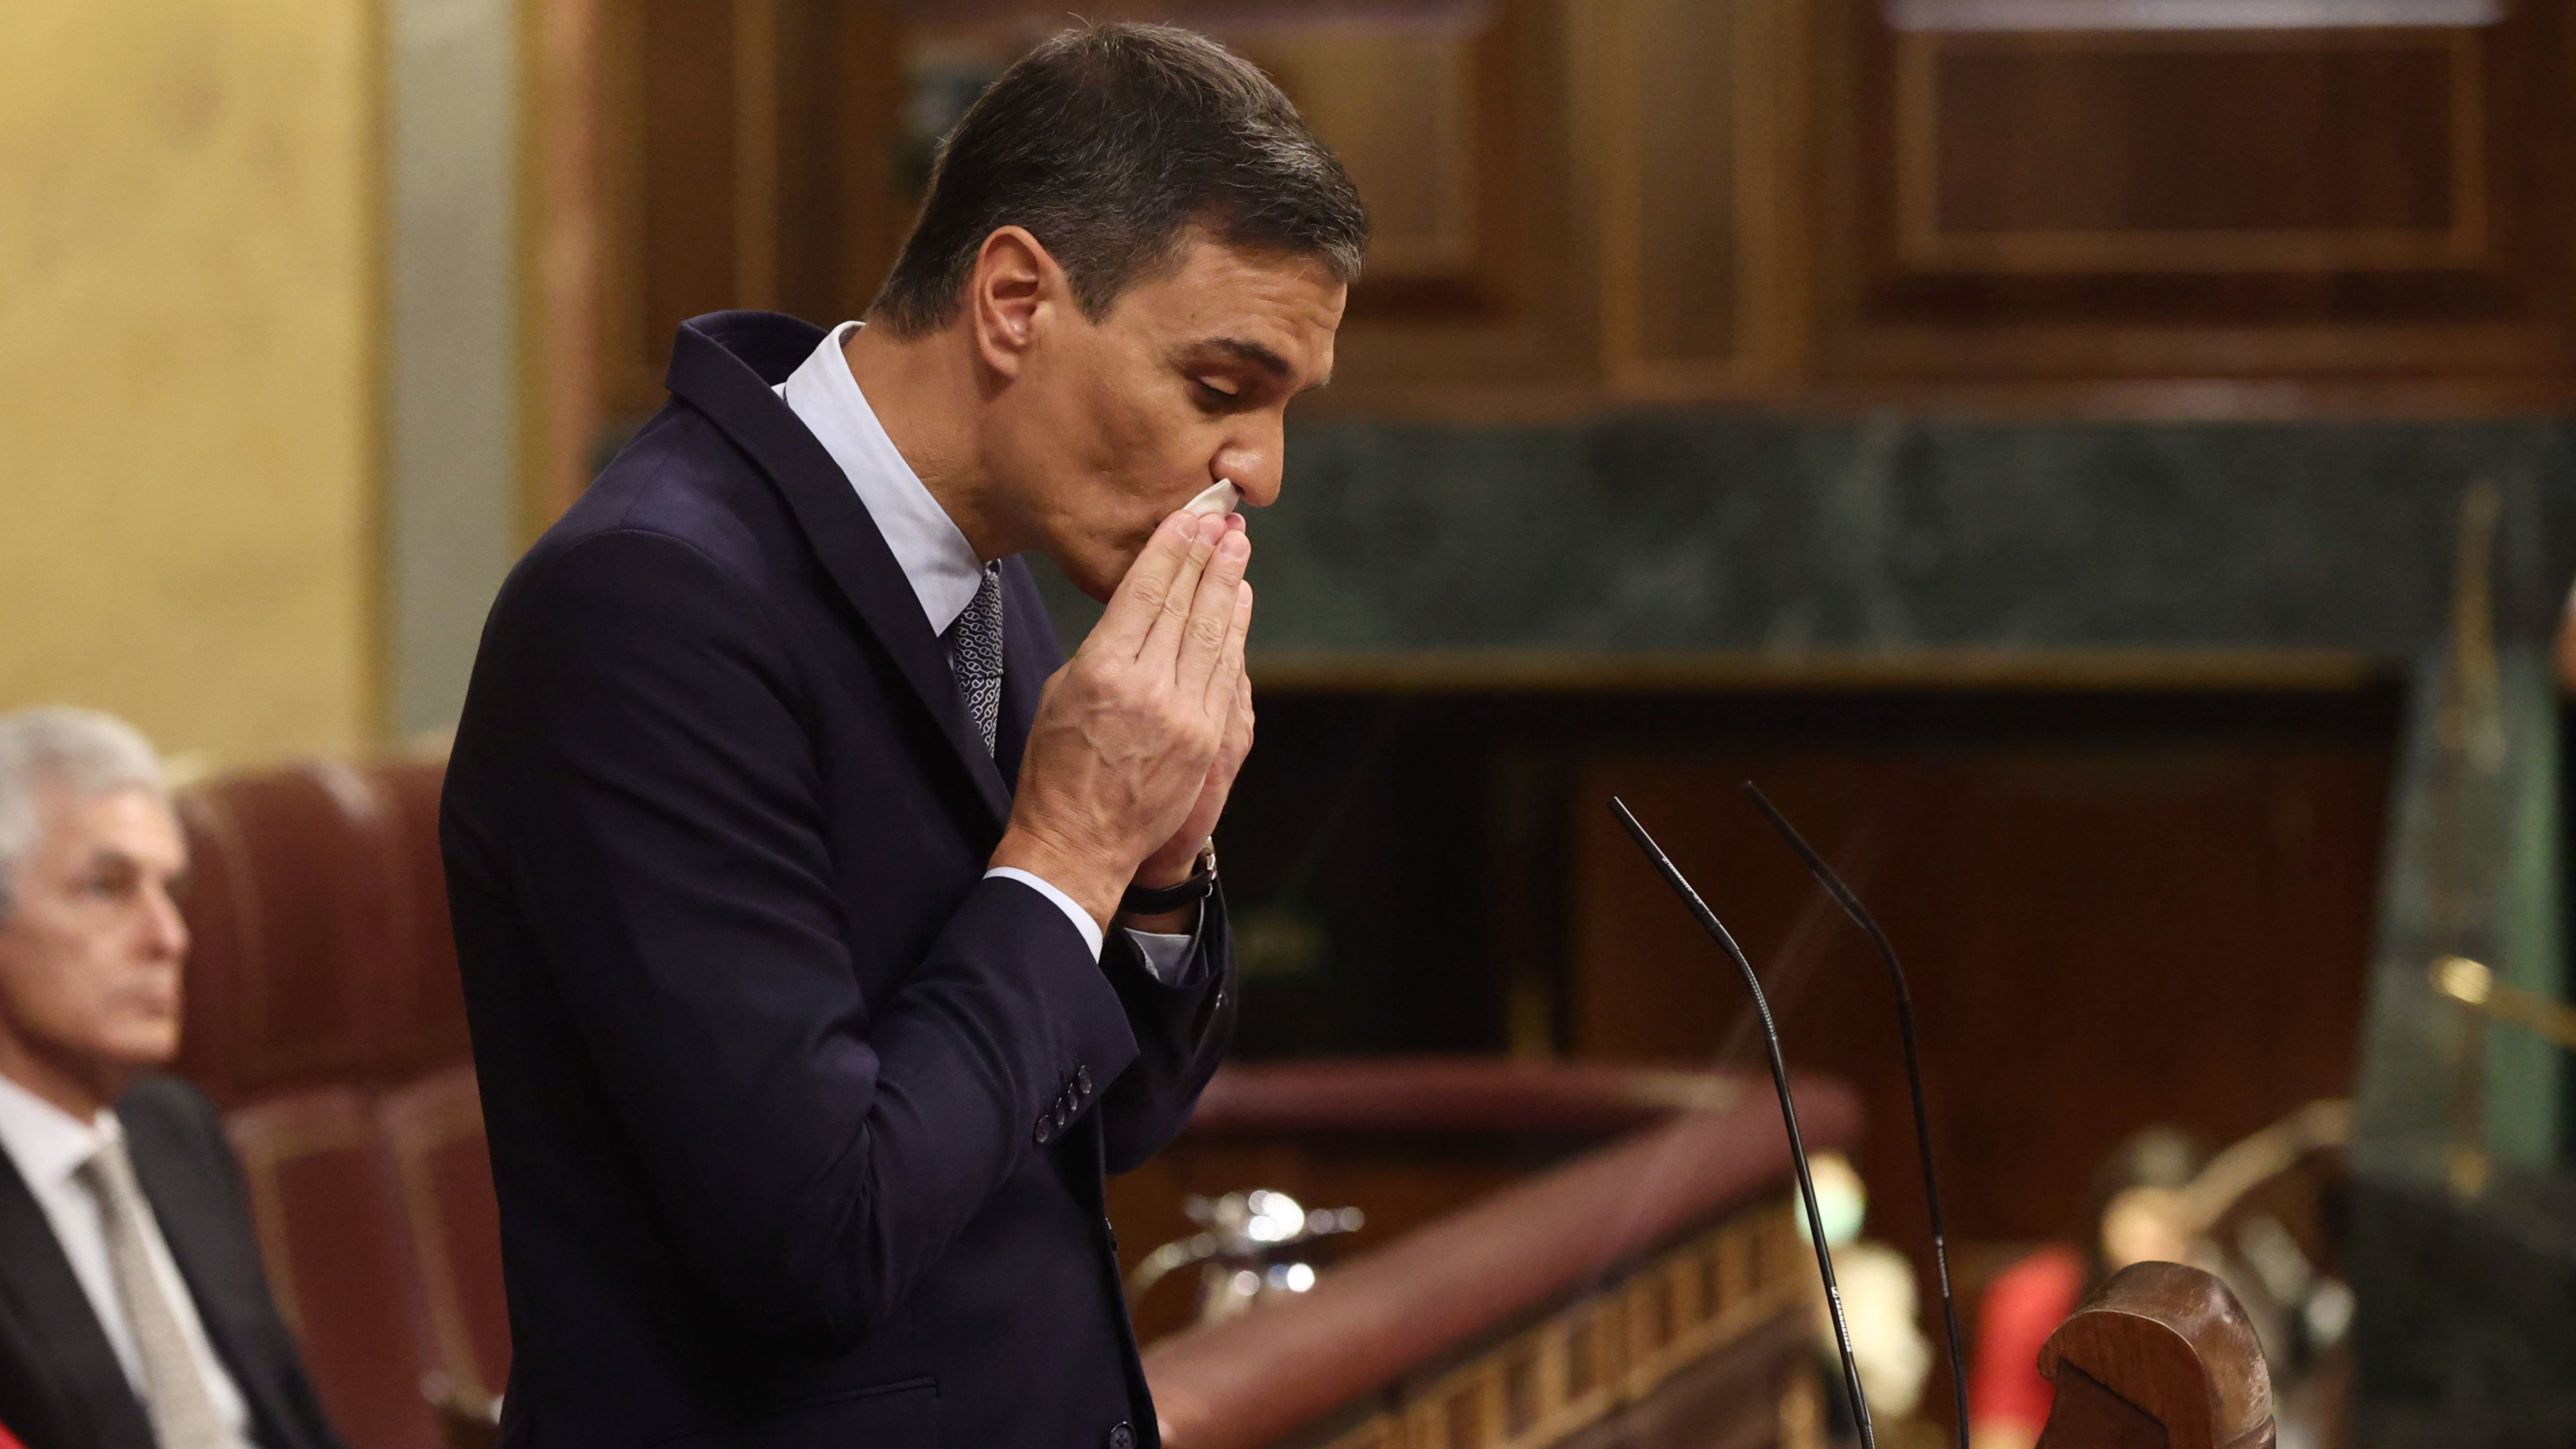 El "olvido" de Sánchez al mencionar a los ministros de Podemos